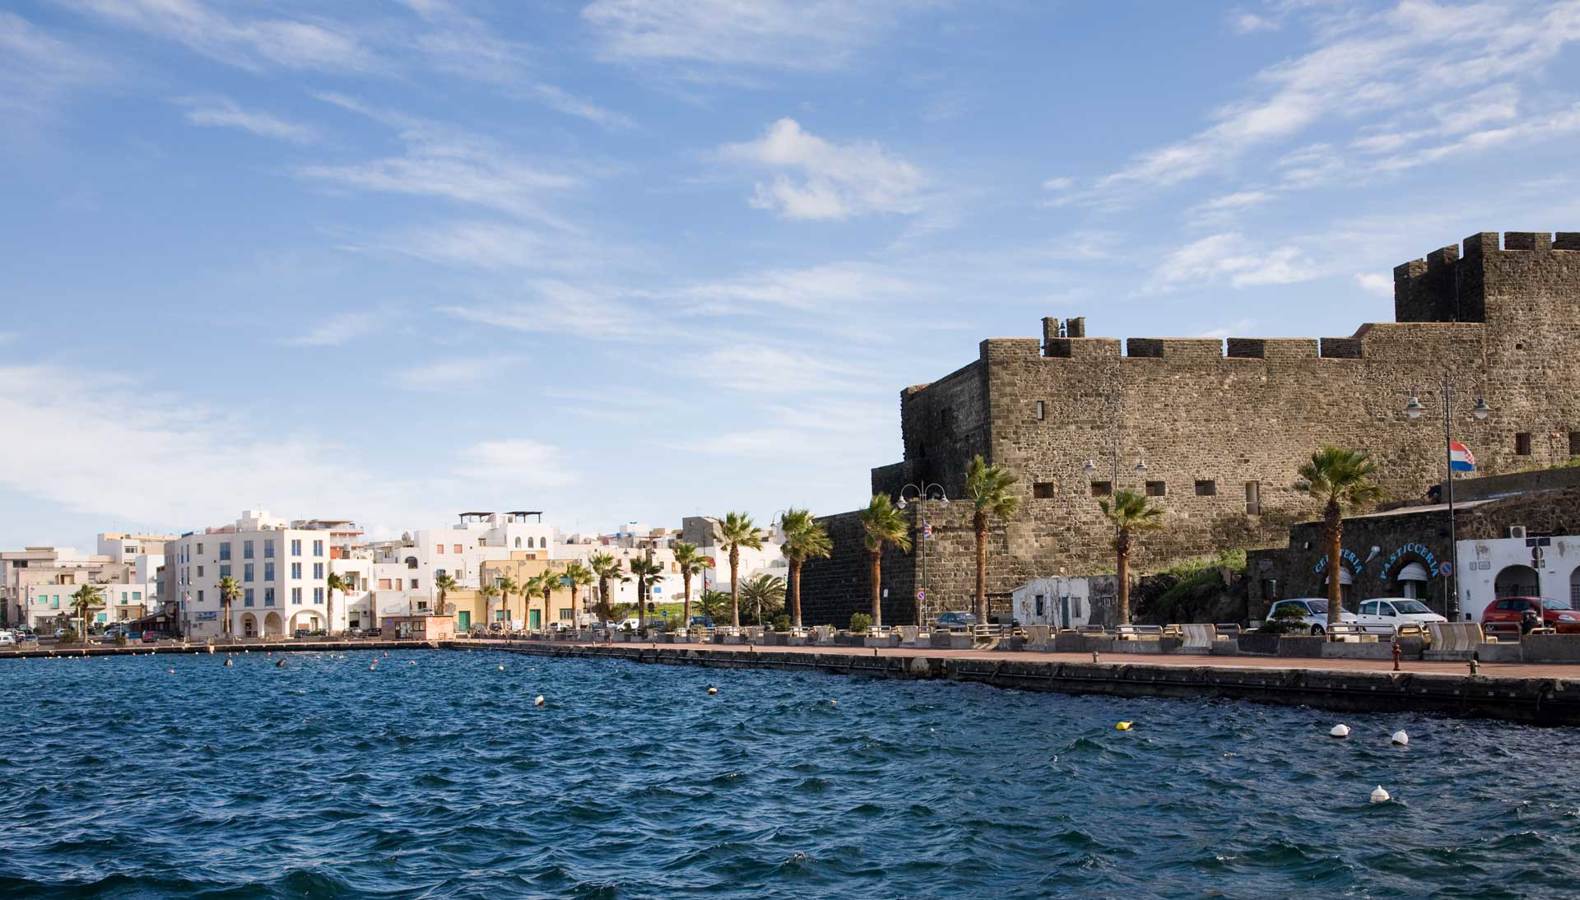 Port of Pantelleria.